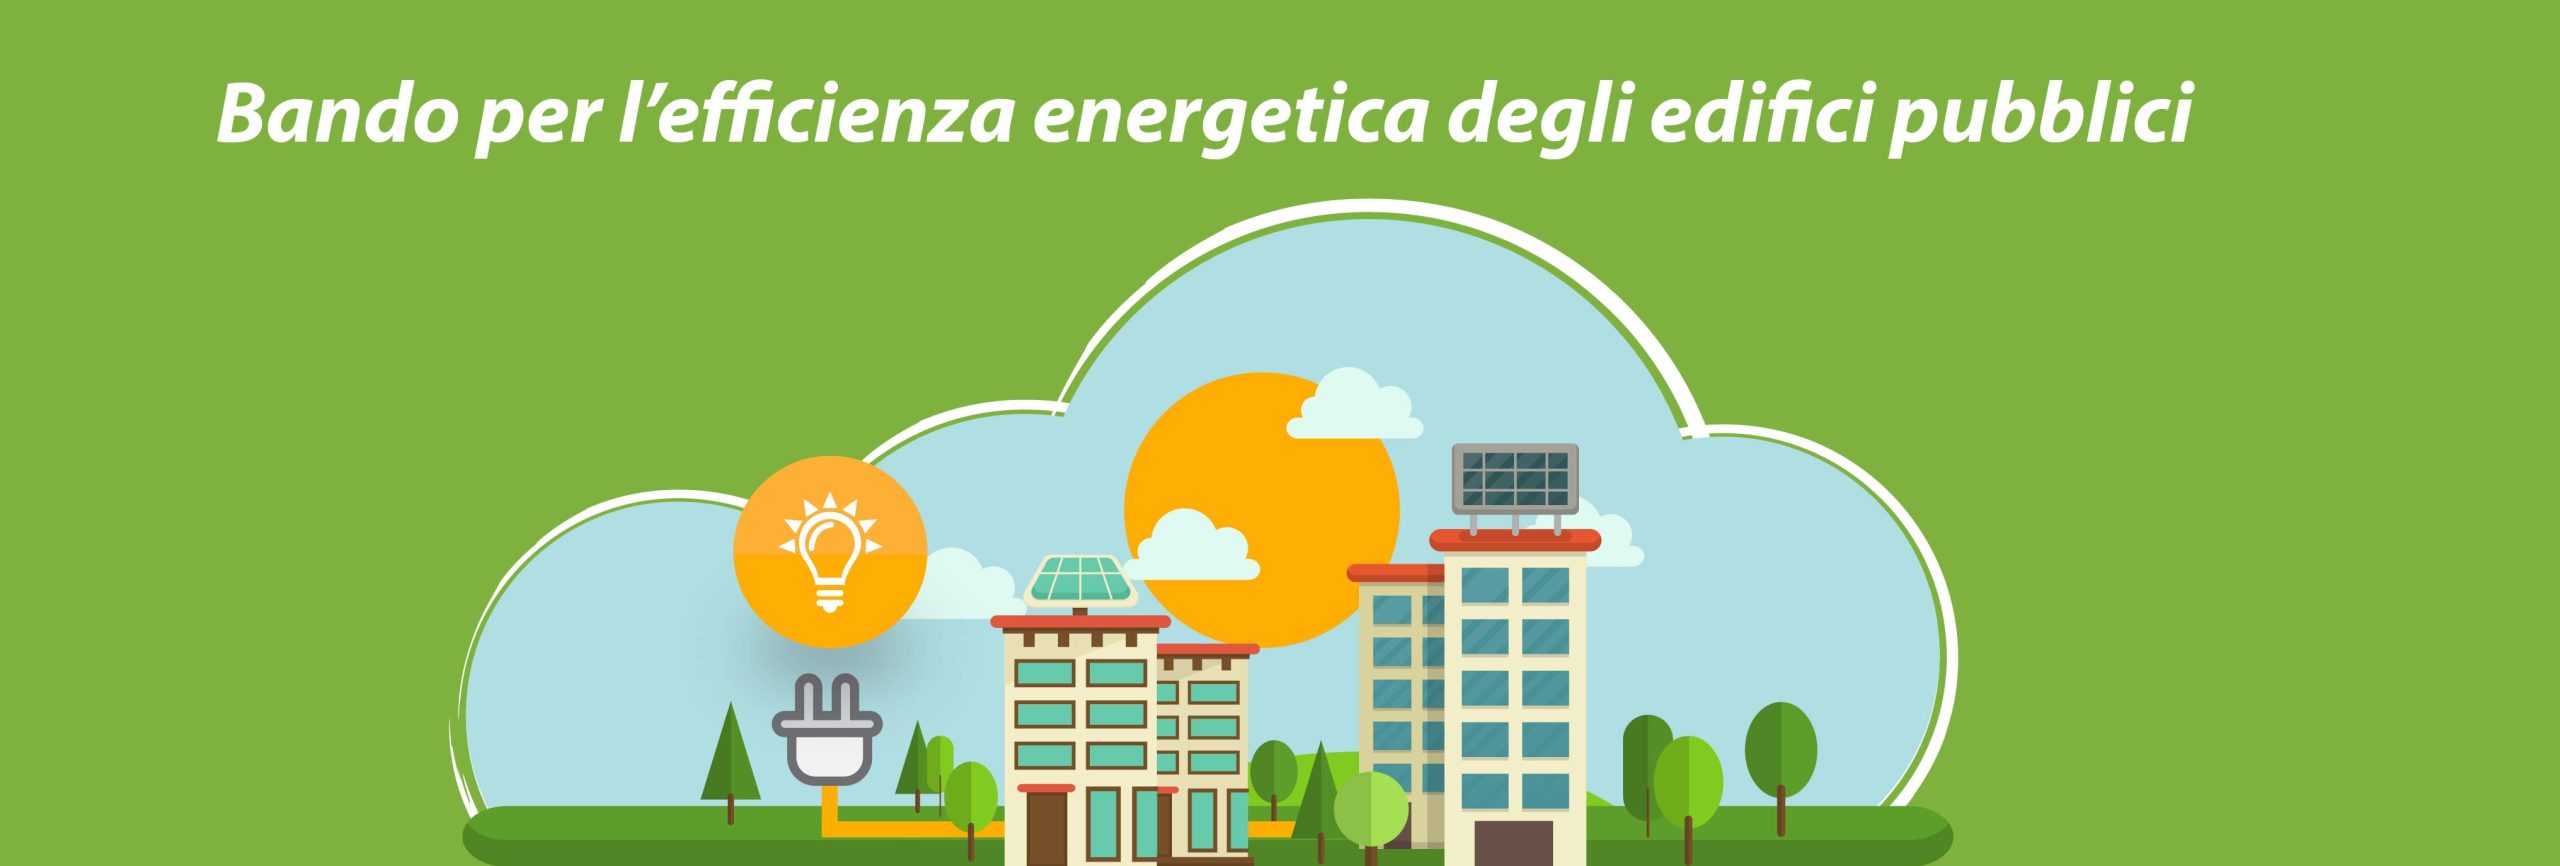 Bando per l’efficienza energetica degli edifici pubblici comunali